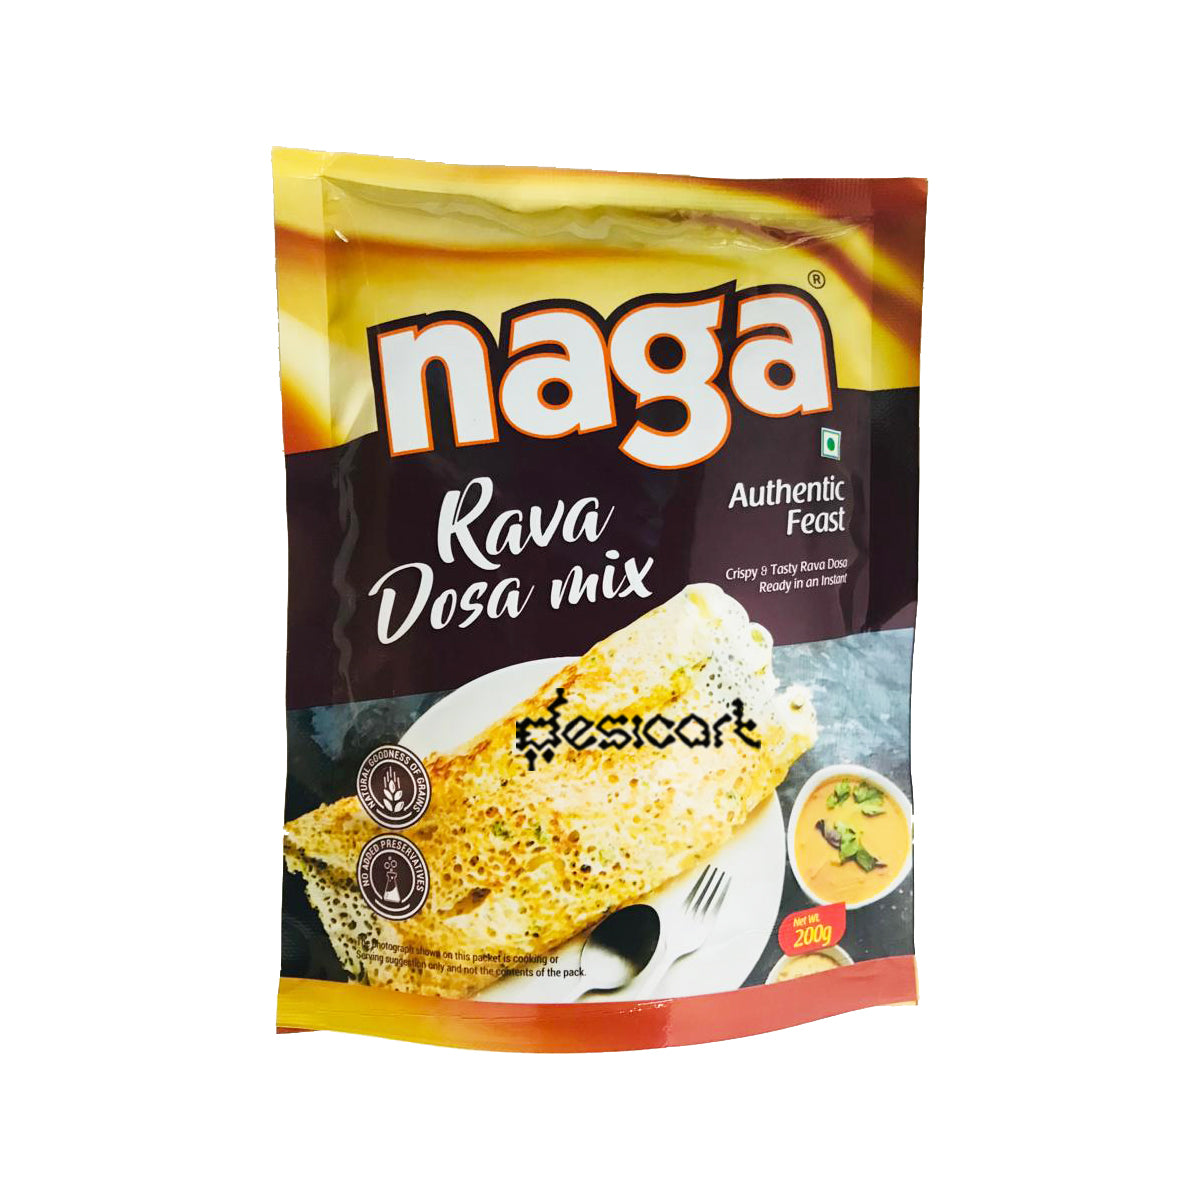 Naga Rava Dosa Mix 200g